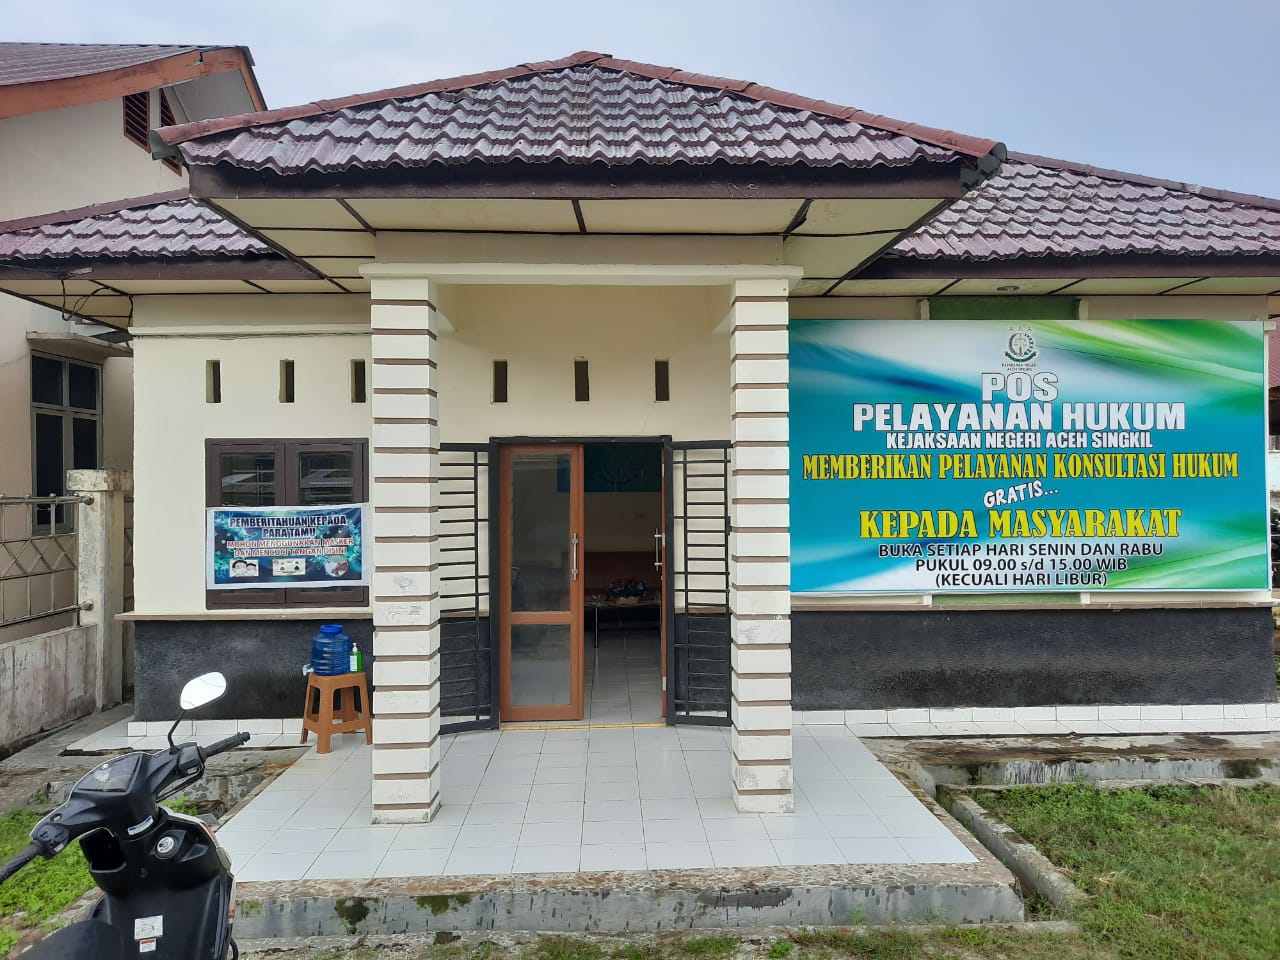 Gambar Kejaksaan Negeri Aceh Singkil